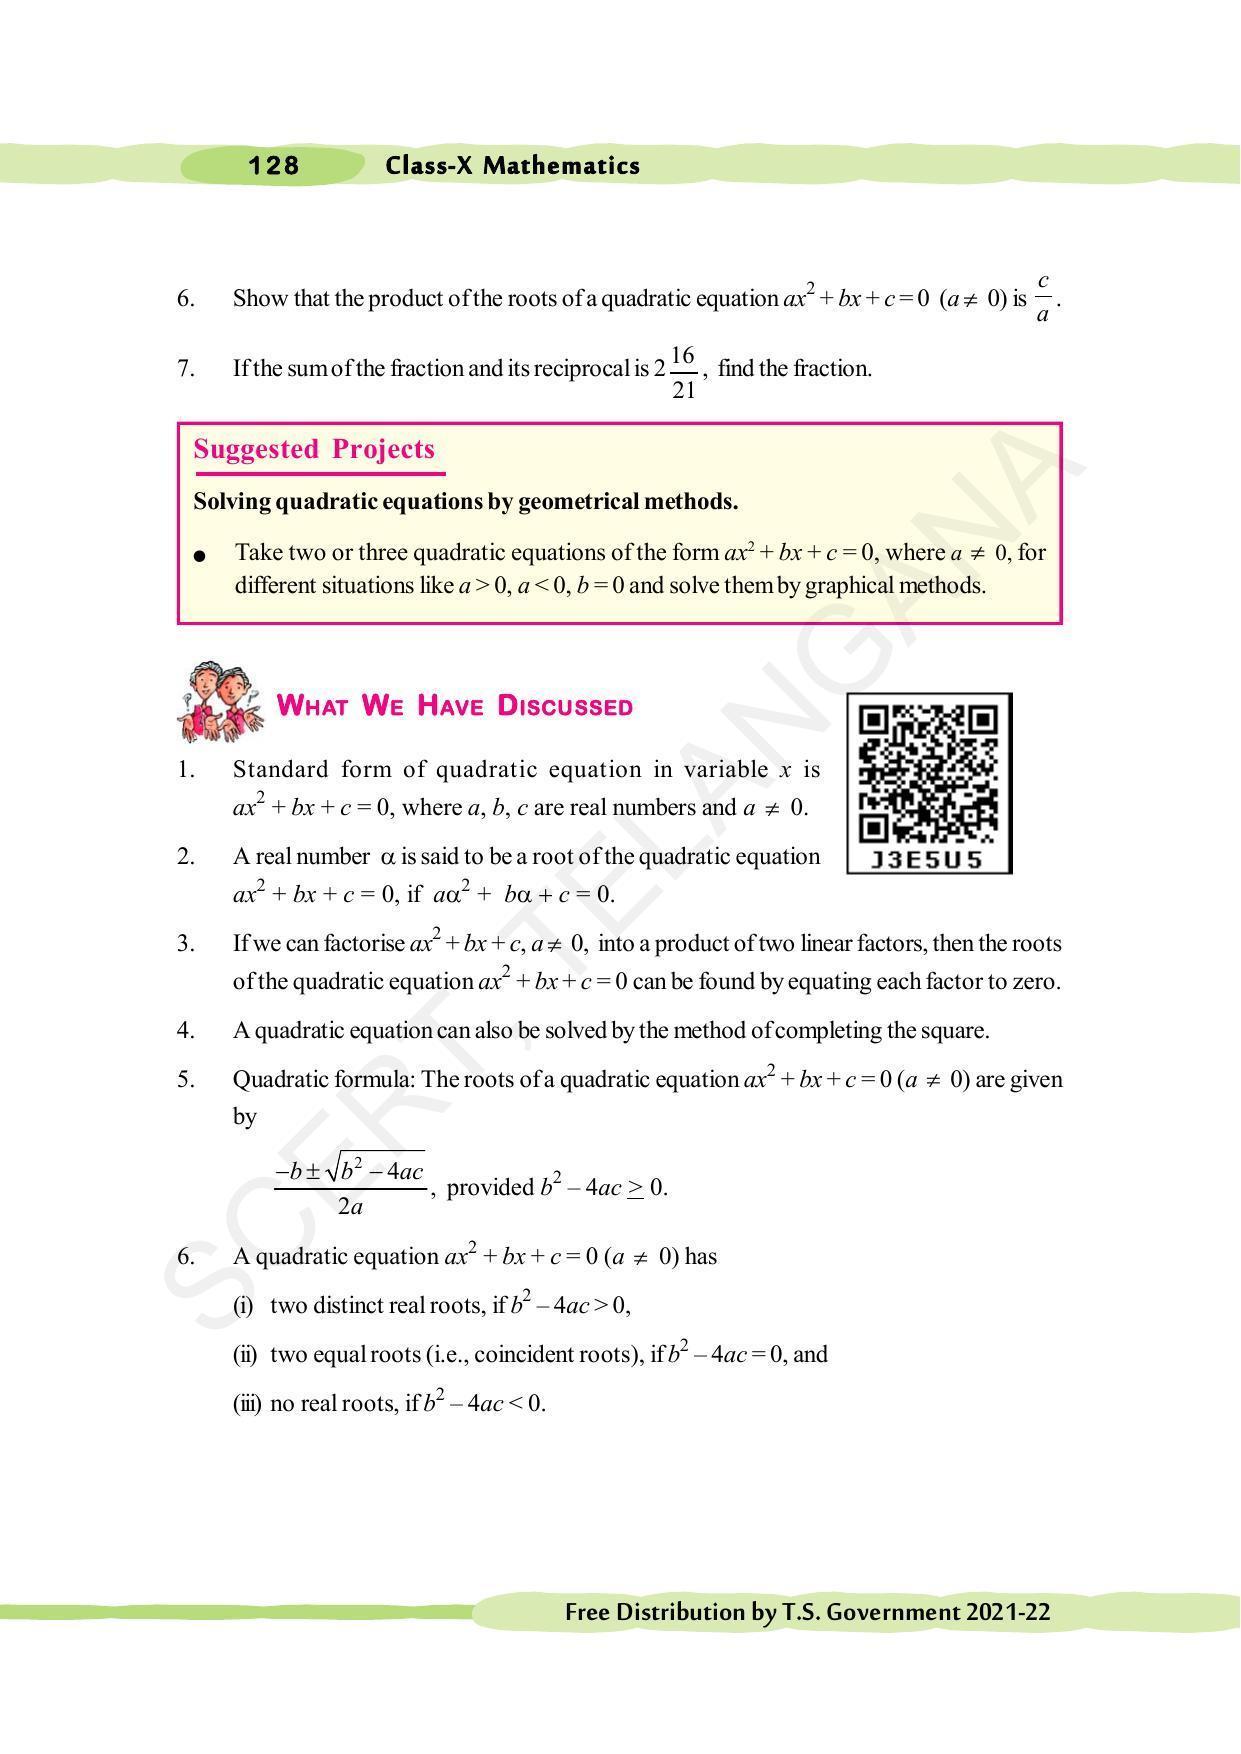 TS SCERT Class 10 Maths (English Medium) Text Book - Page 138